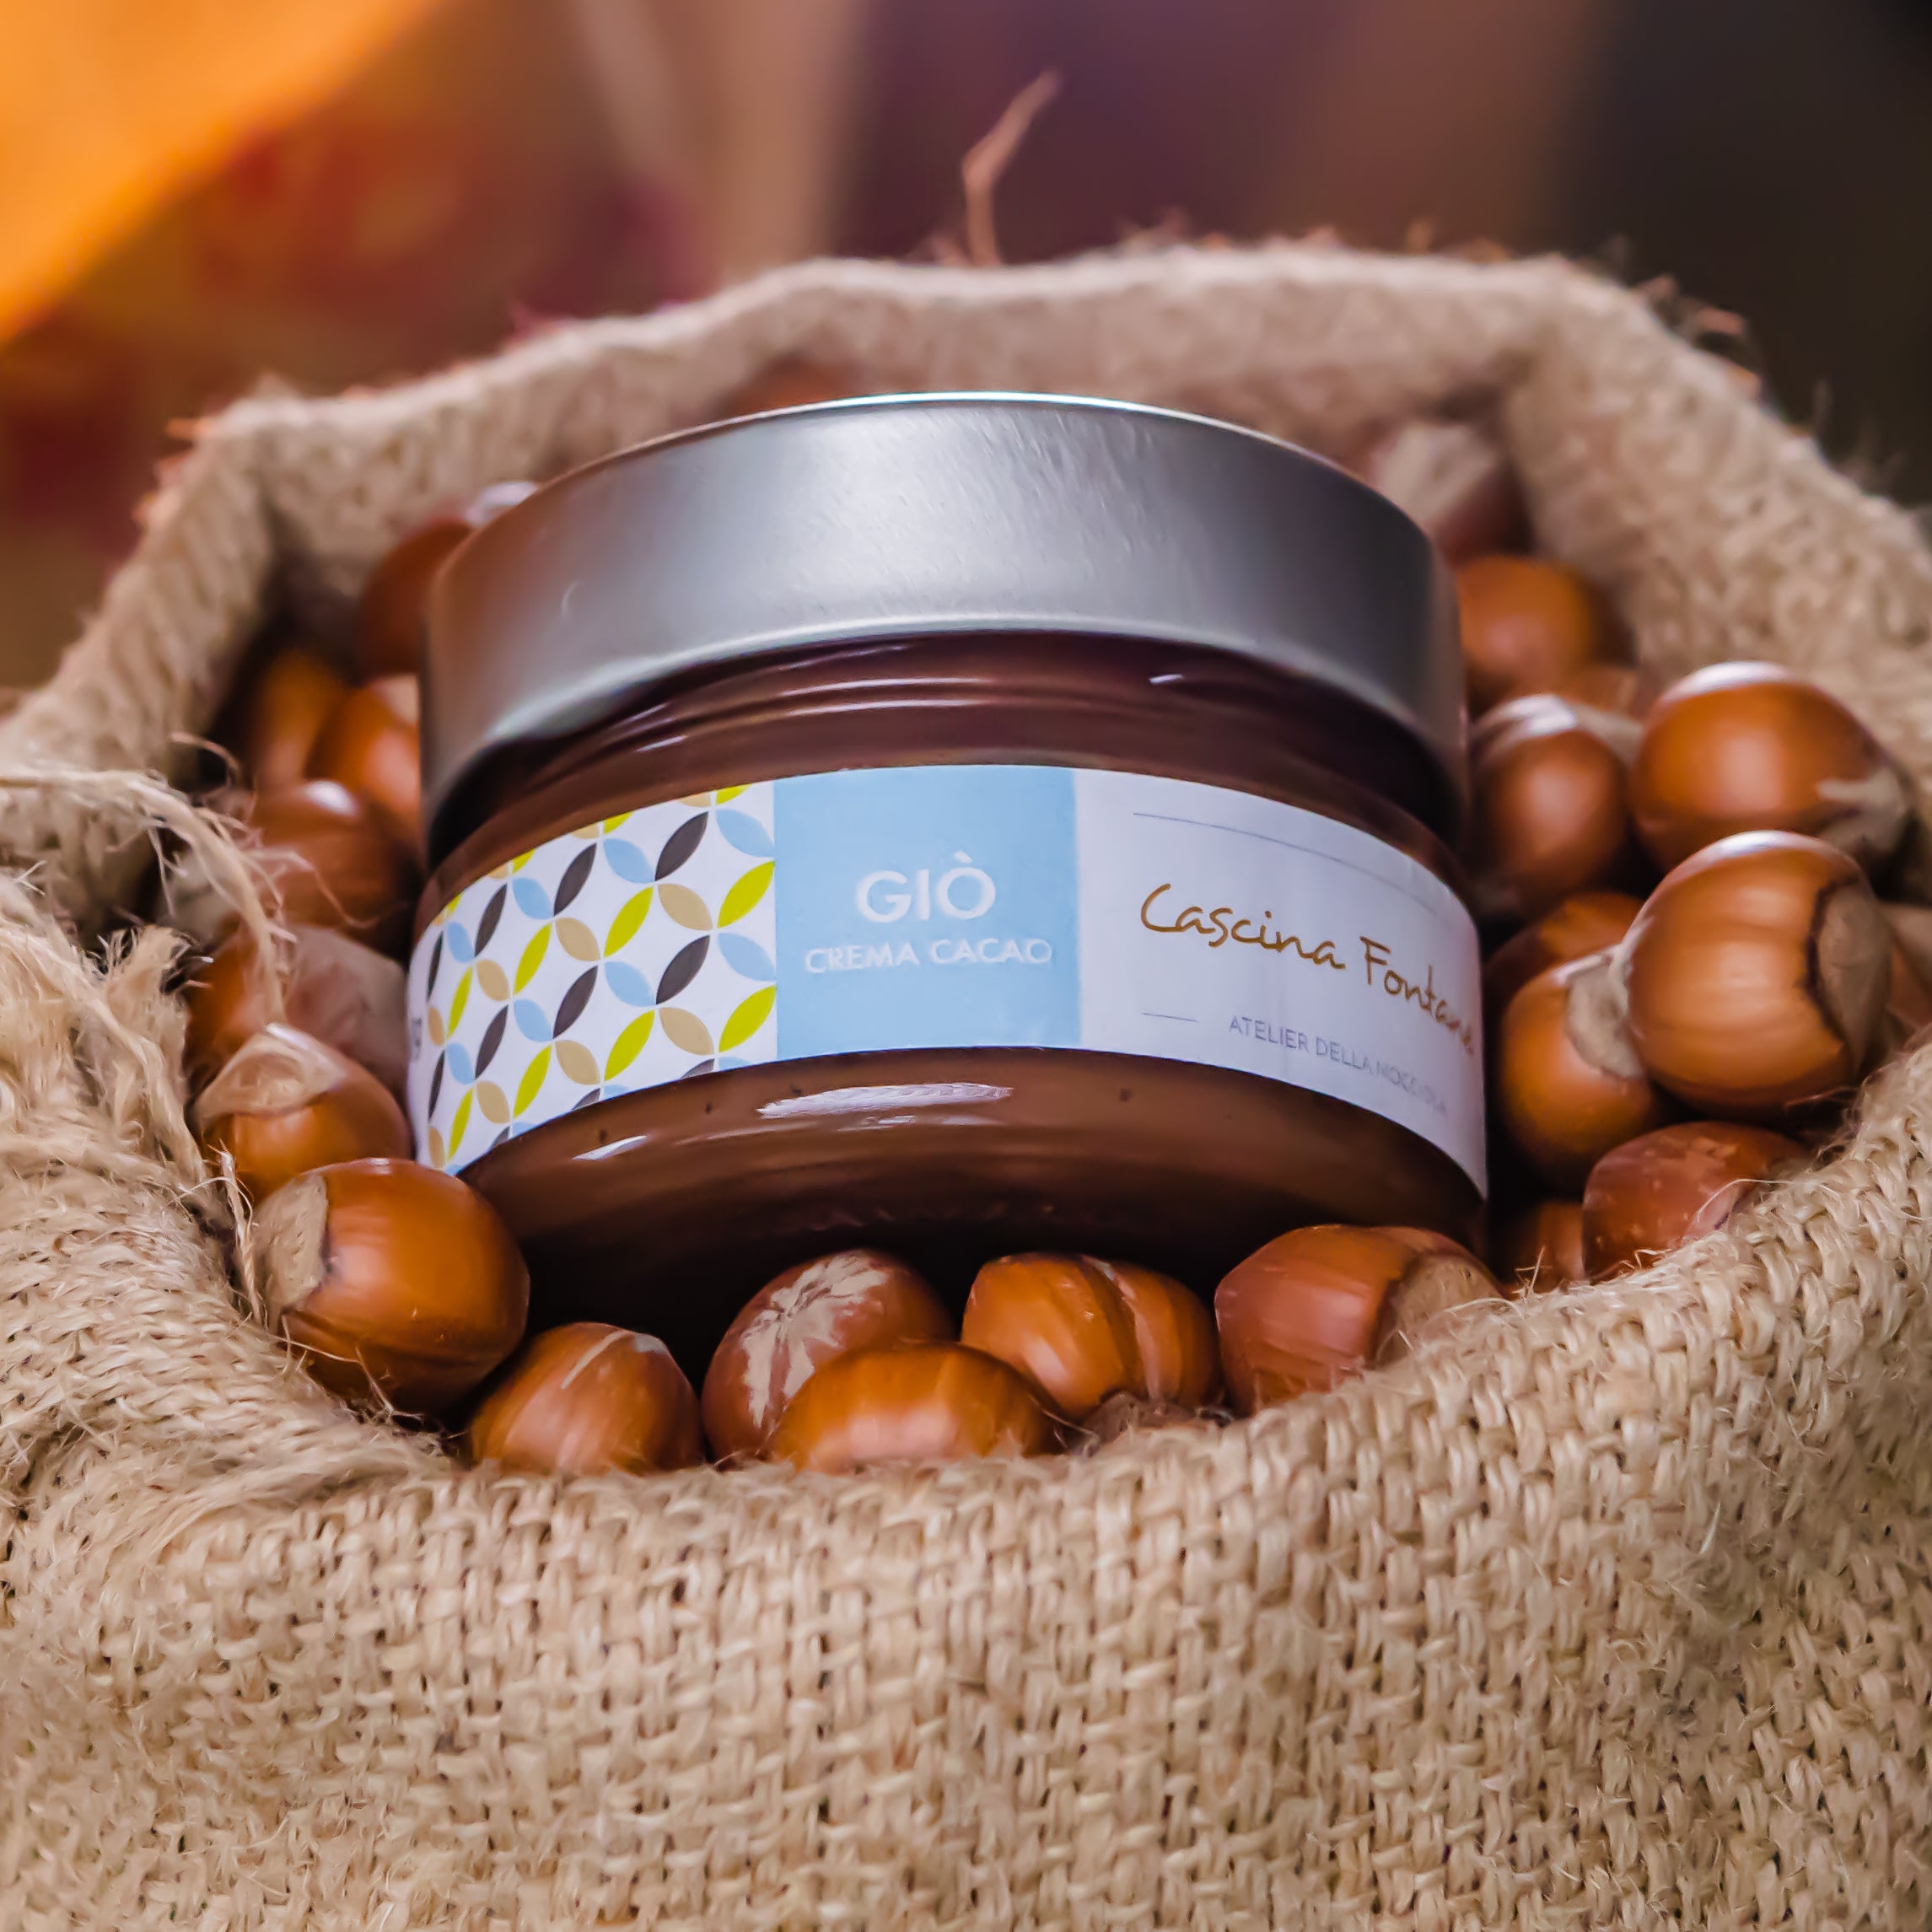 Crema di Nocciola Spalmabile Cacao - "Giò"